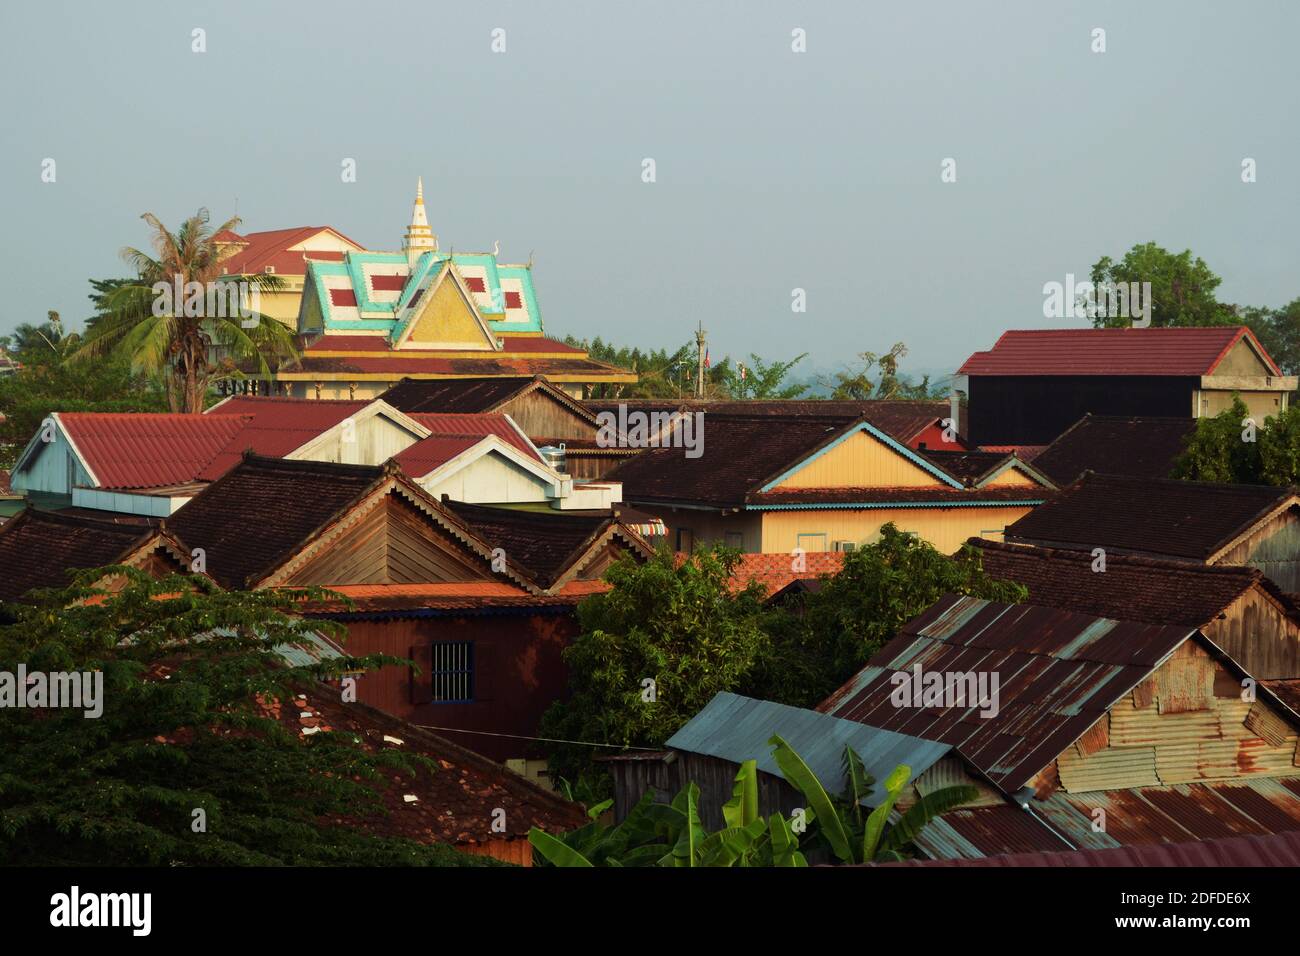 Stadtbild von Hausdächern und Wat (buddhistischer Tempel) auf einem Hintergrund. Tropische Landschaft mit Palmen. Stung Treng, Kambodscha Stockfoto